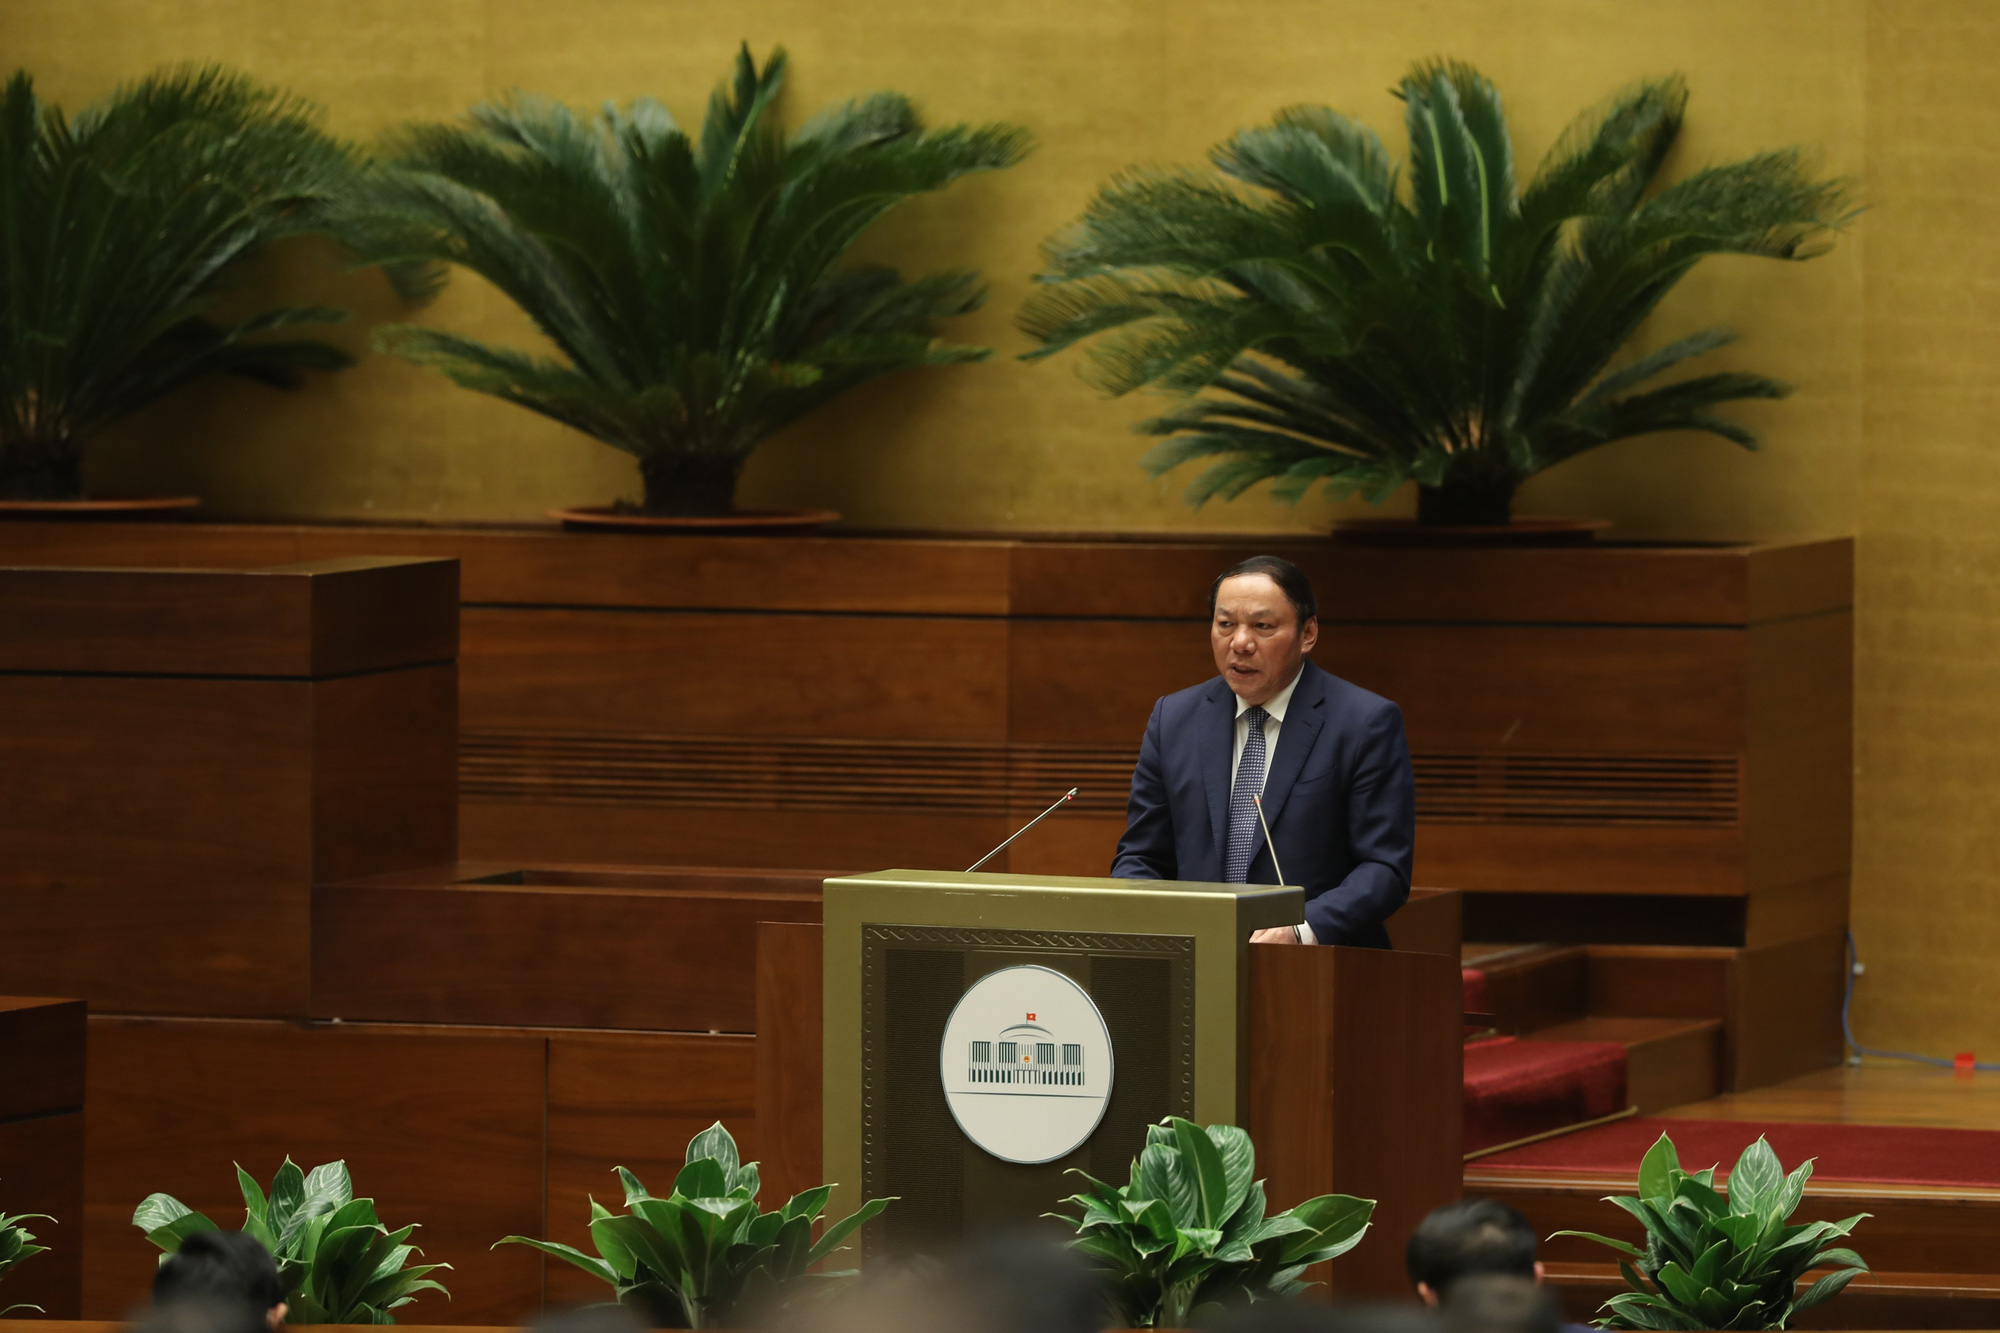 Bộ trưởng Nguyễn Văn Hùng: Phát huy sức mạnh văn hóa trong bồi đắp giá trị chân, thiện, mỹ để xây dựng con người phát triển toàn diện - Ảnh 1.